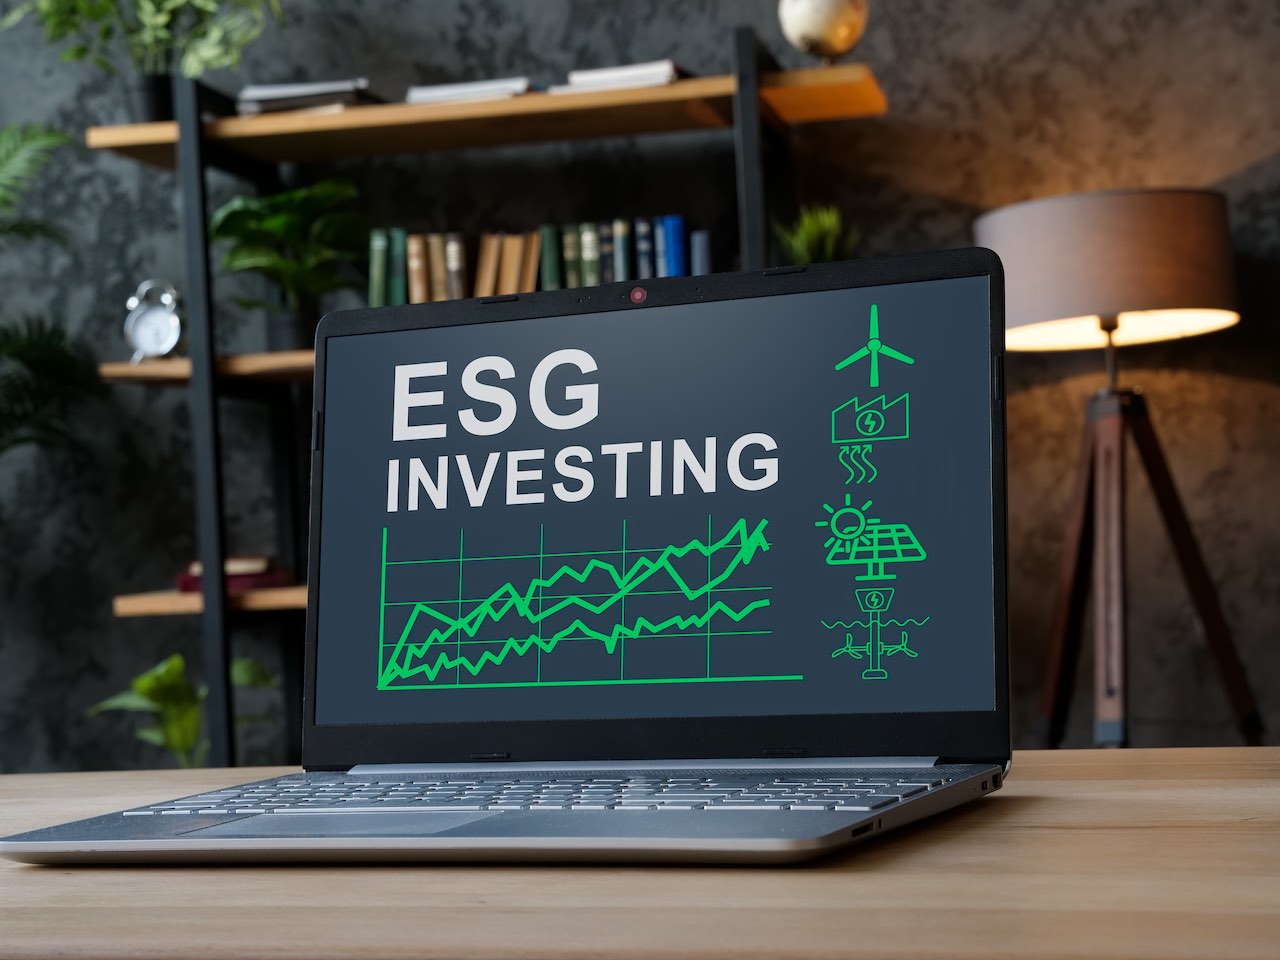 Rechner mit ESG-Investing-Einblendung